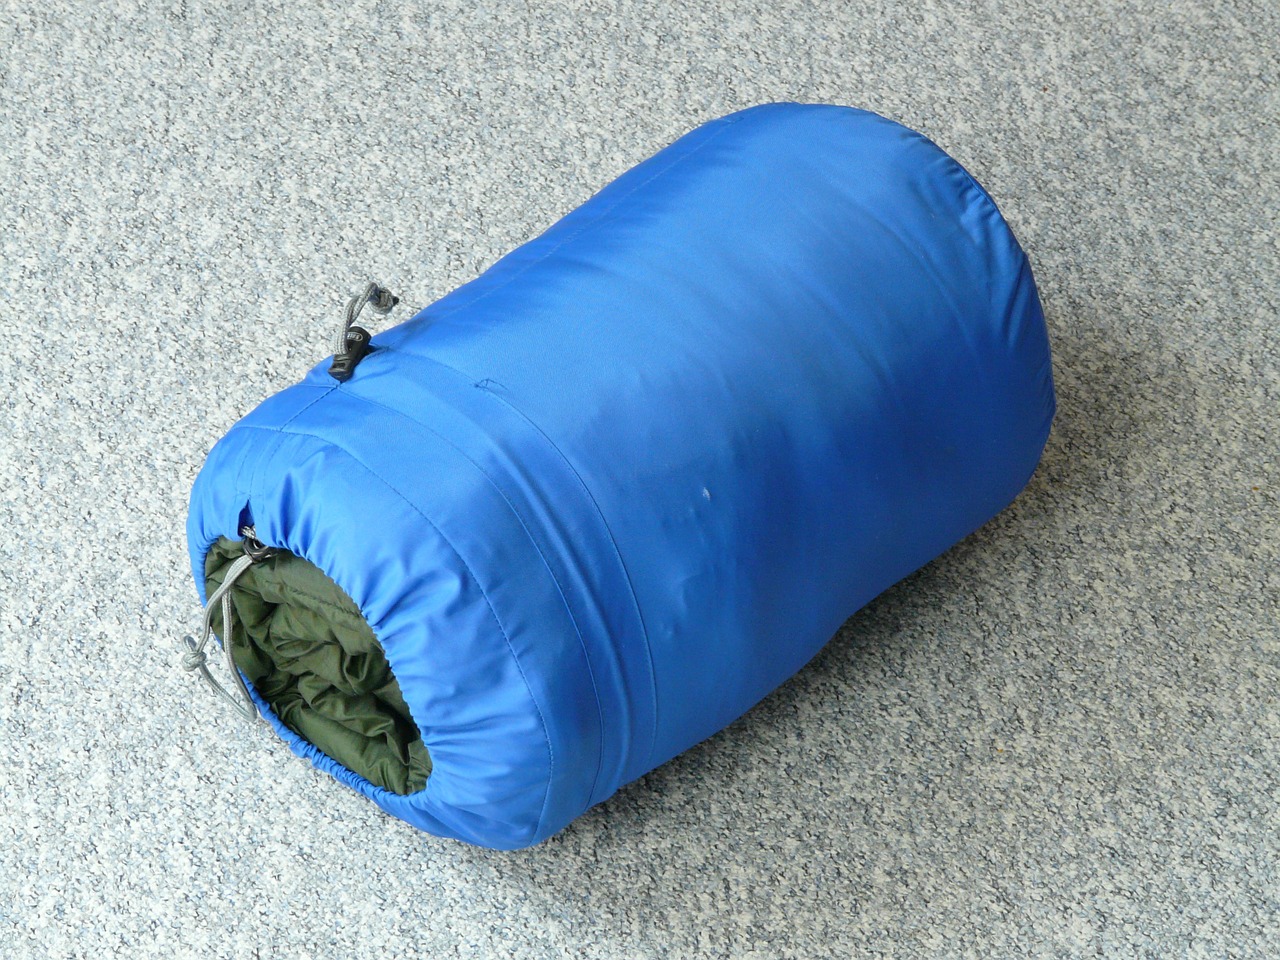 Ein kleines Packmaß und geringes Gewicht ist bei einem Sommerschlafsack besonders wichitg, wenn man eine längere Tour starten möchte.